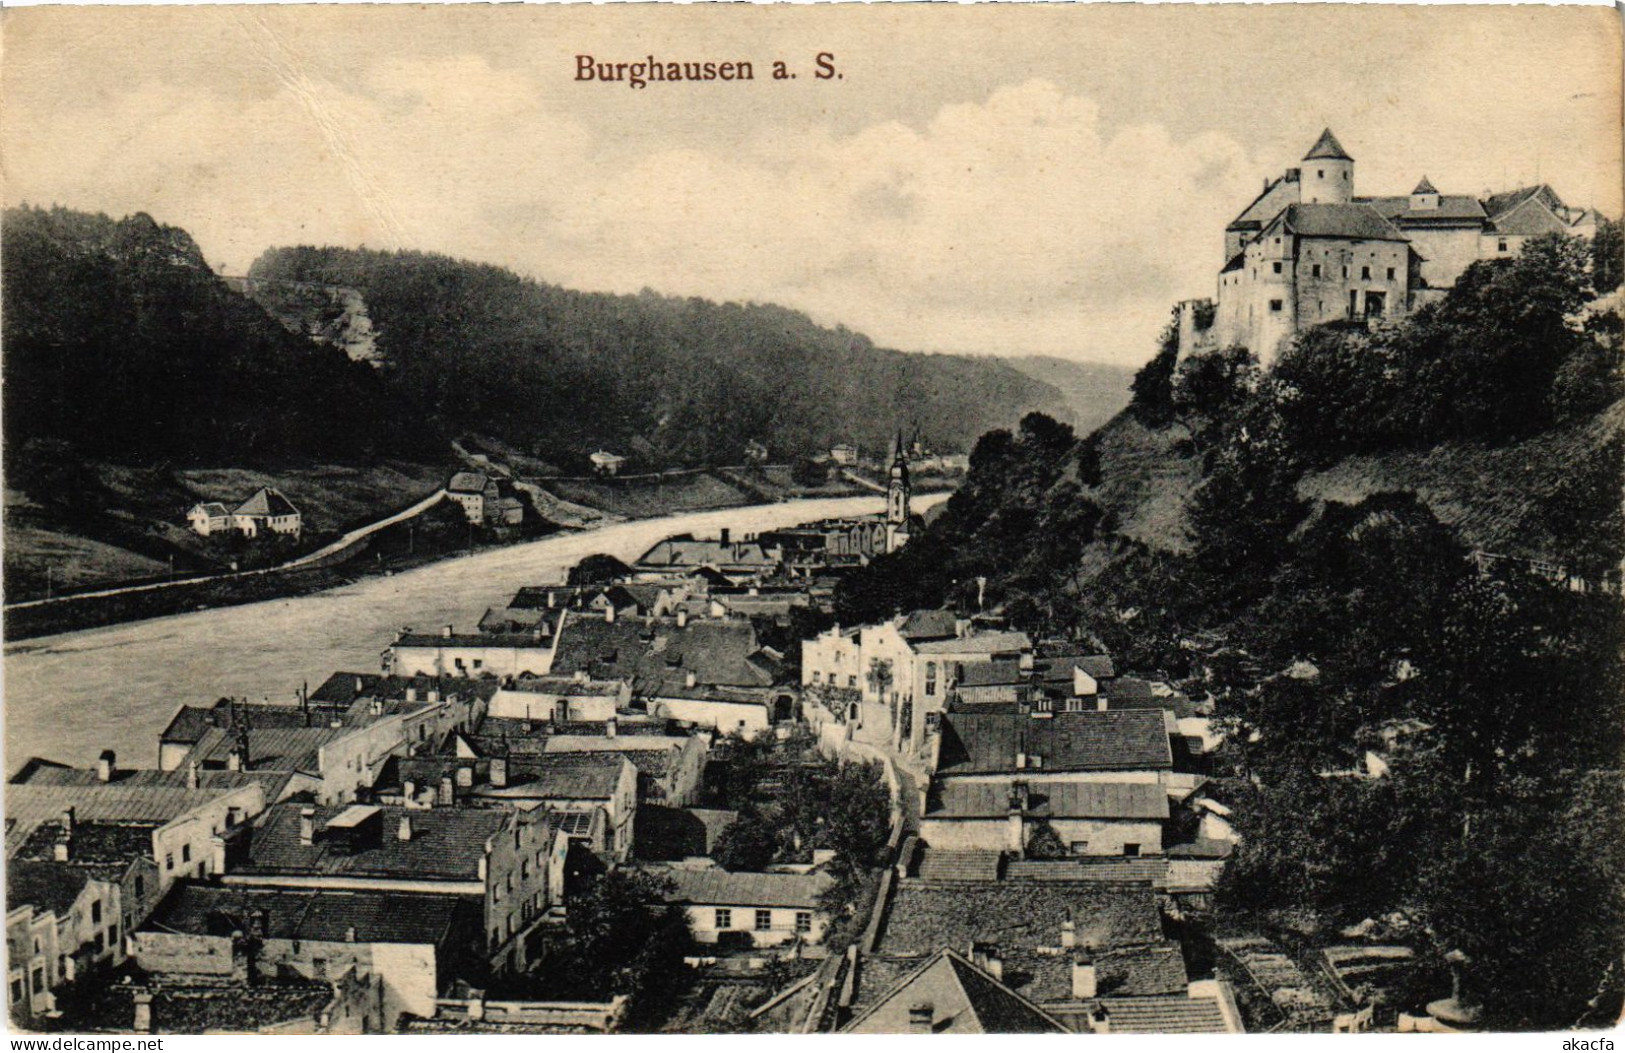 CPA AK Burghausen GERMANY (1401186) - Burghausen